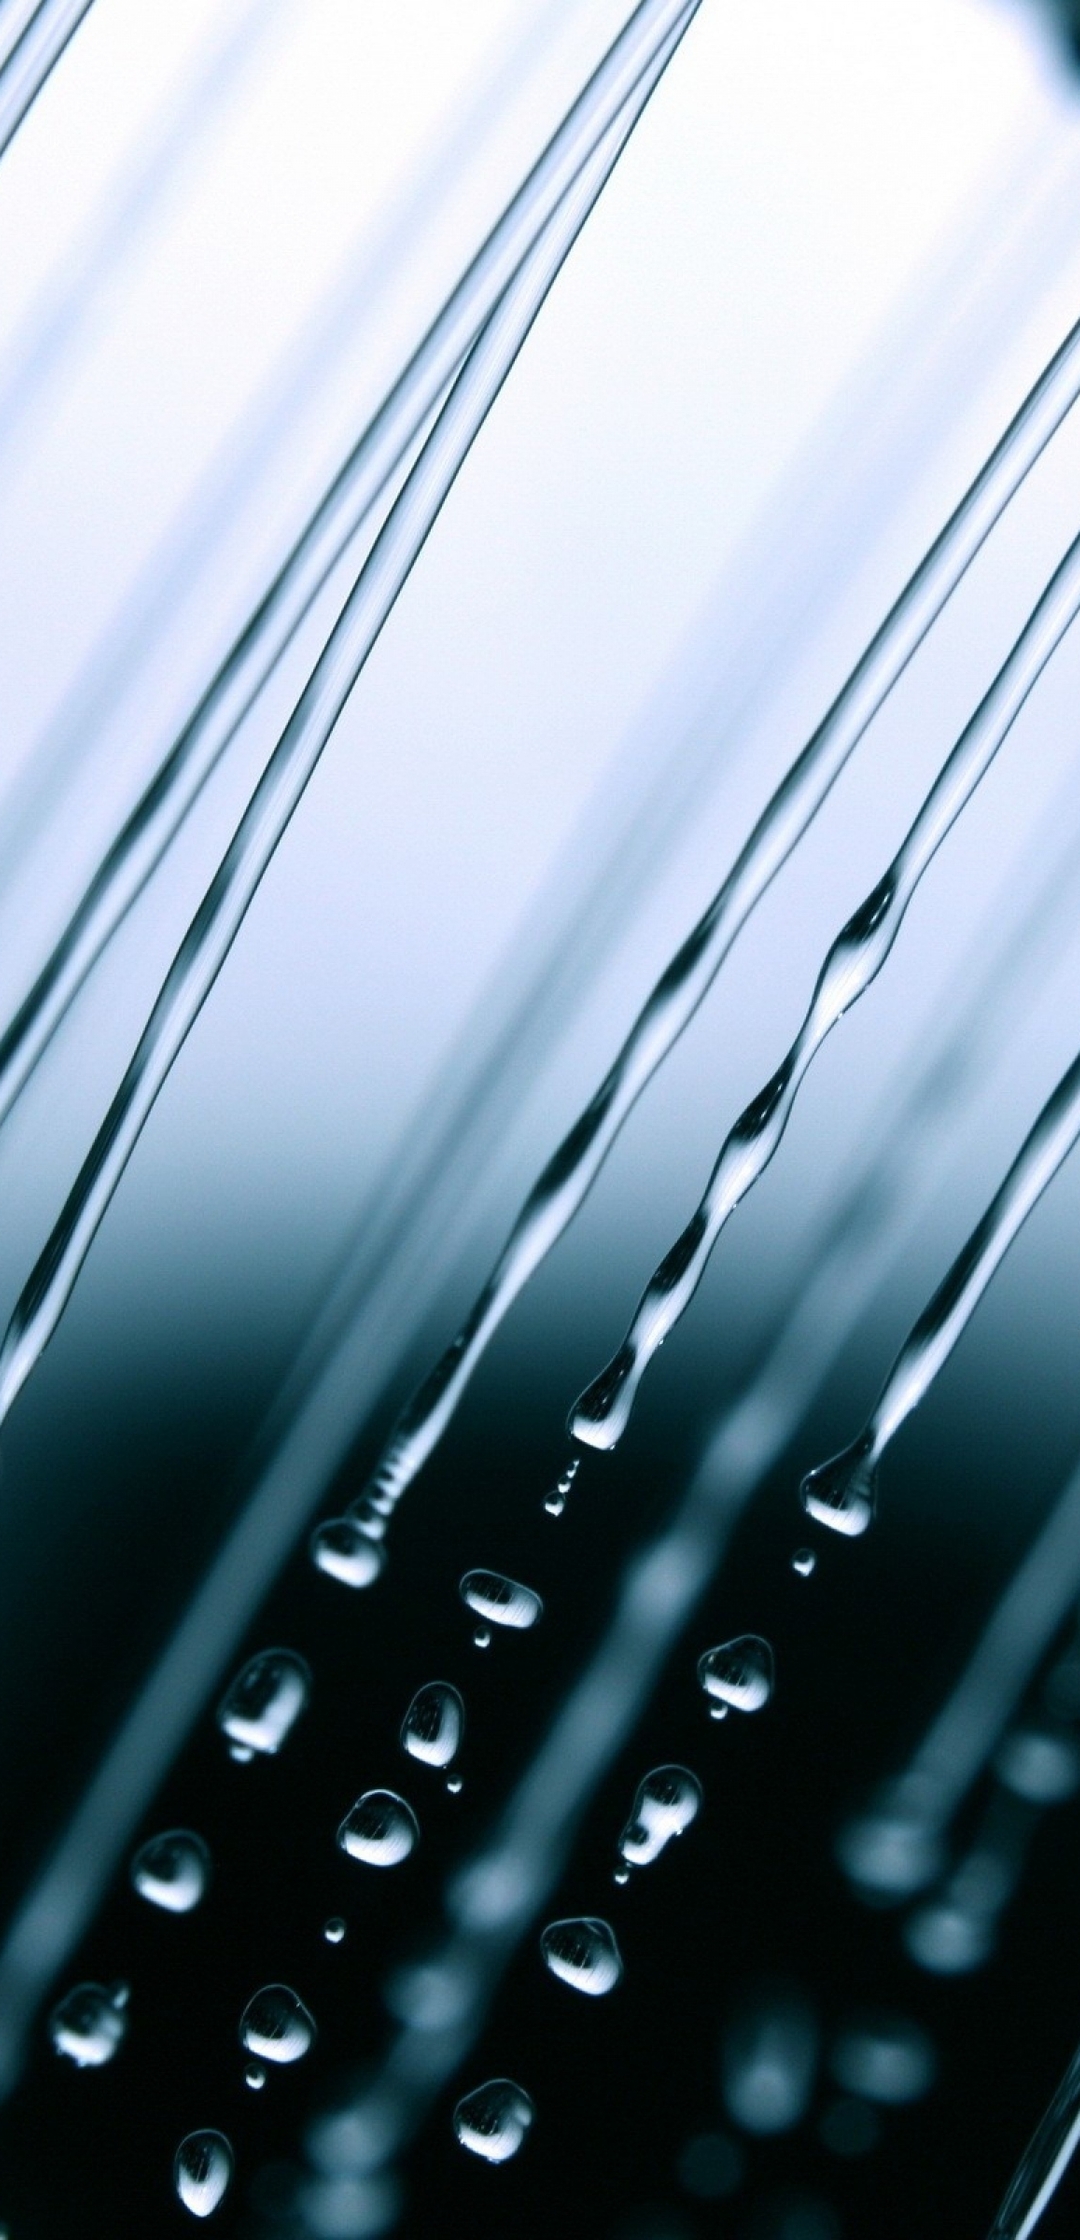 Картинка: Дождь, капли, струя, макро, жидкость